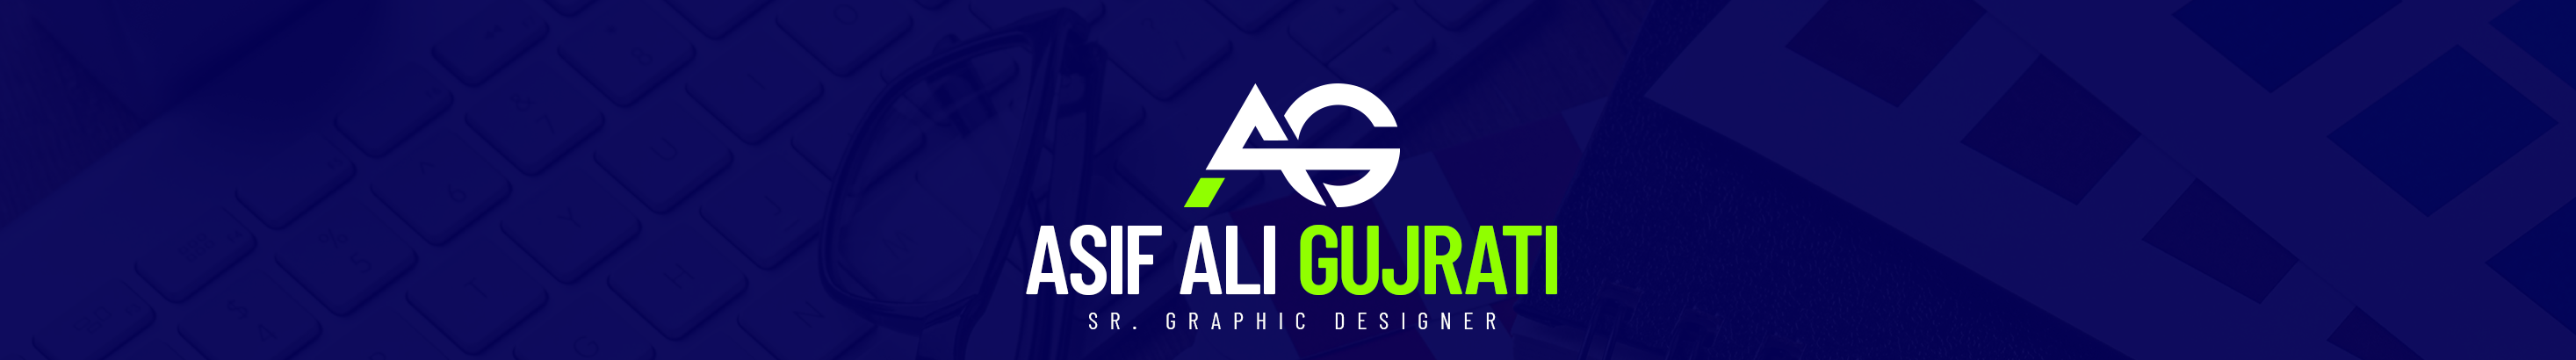 Asif Ali Gujrati's profile banner